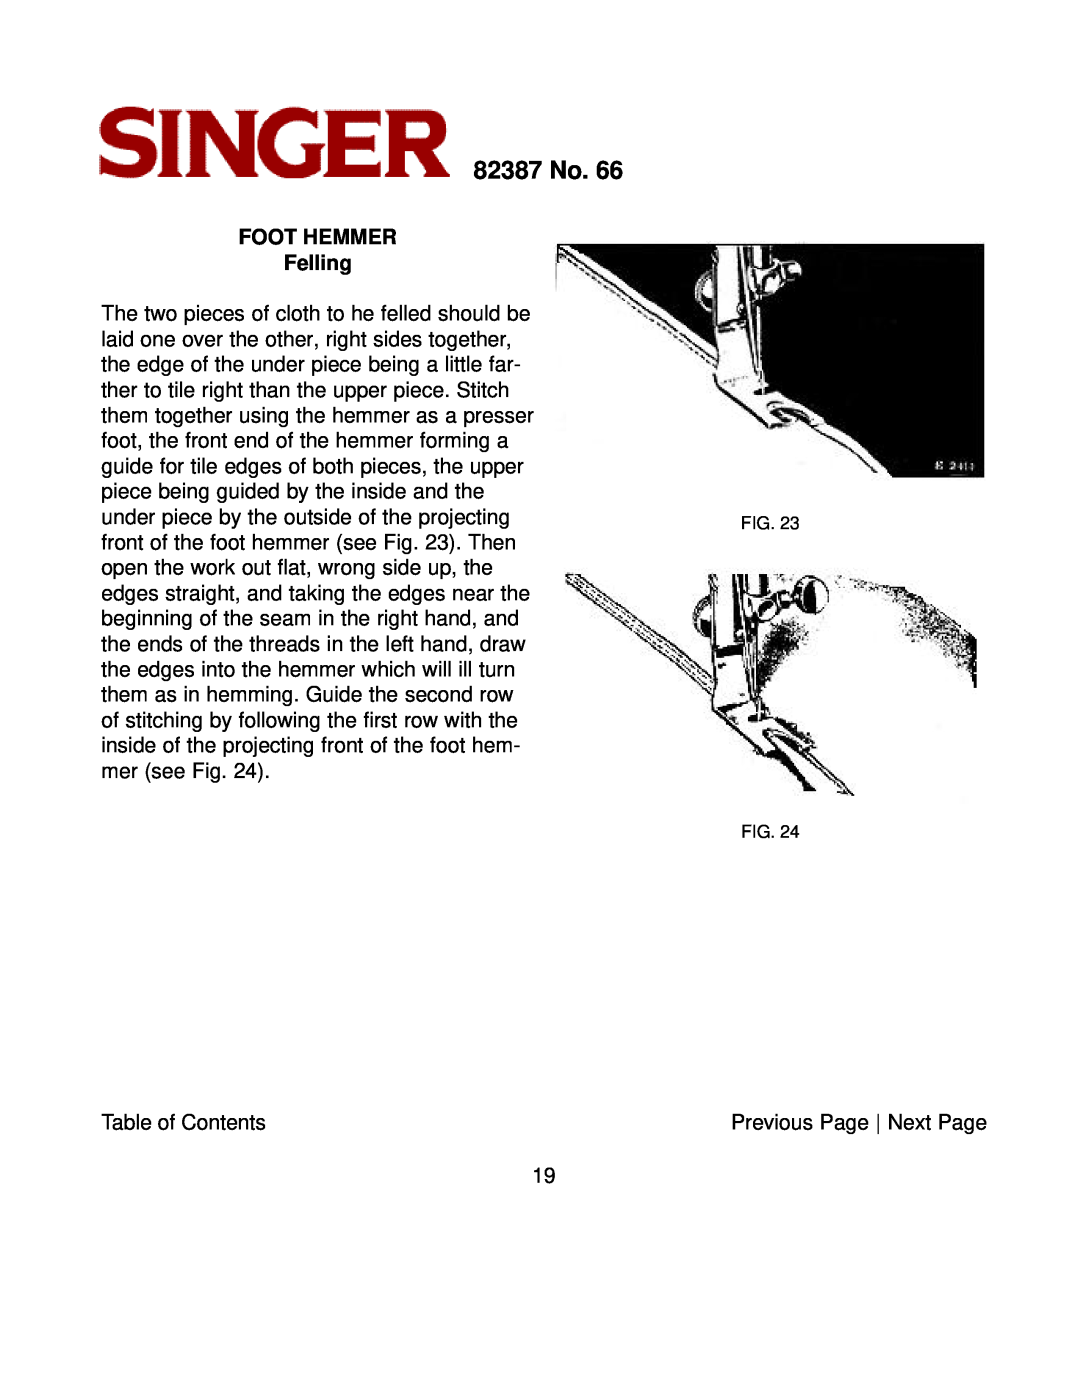 Singer instruction manual FOOT HEMMER Felling, 82387 No 